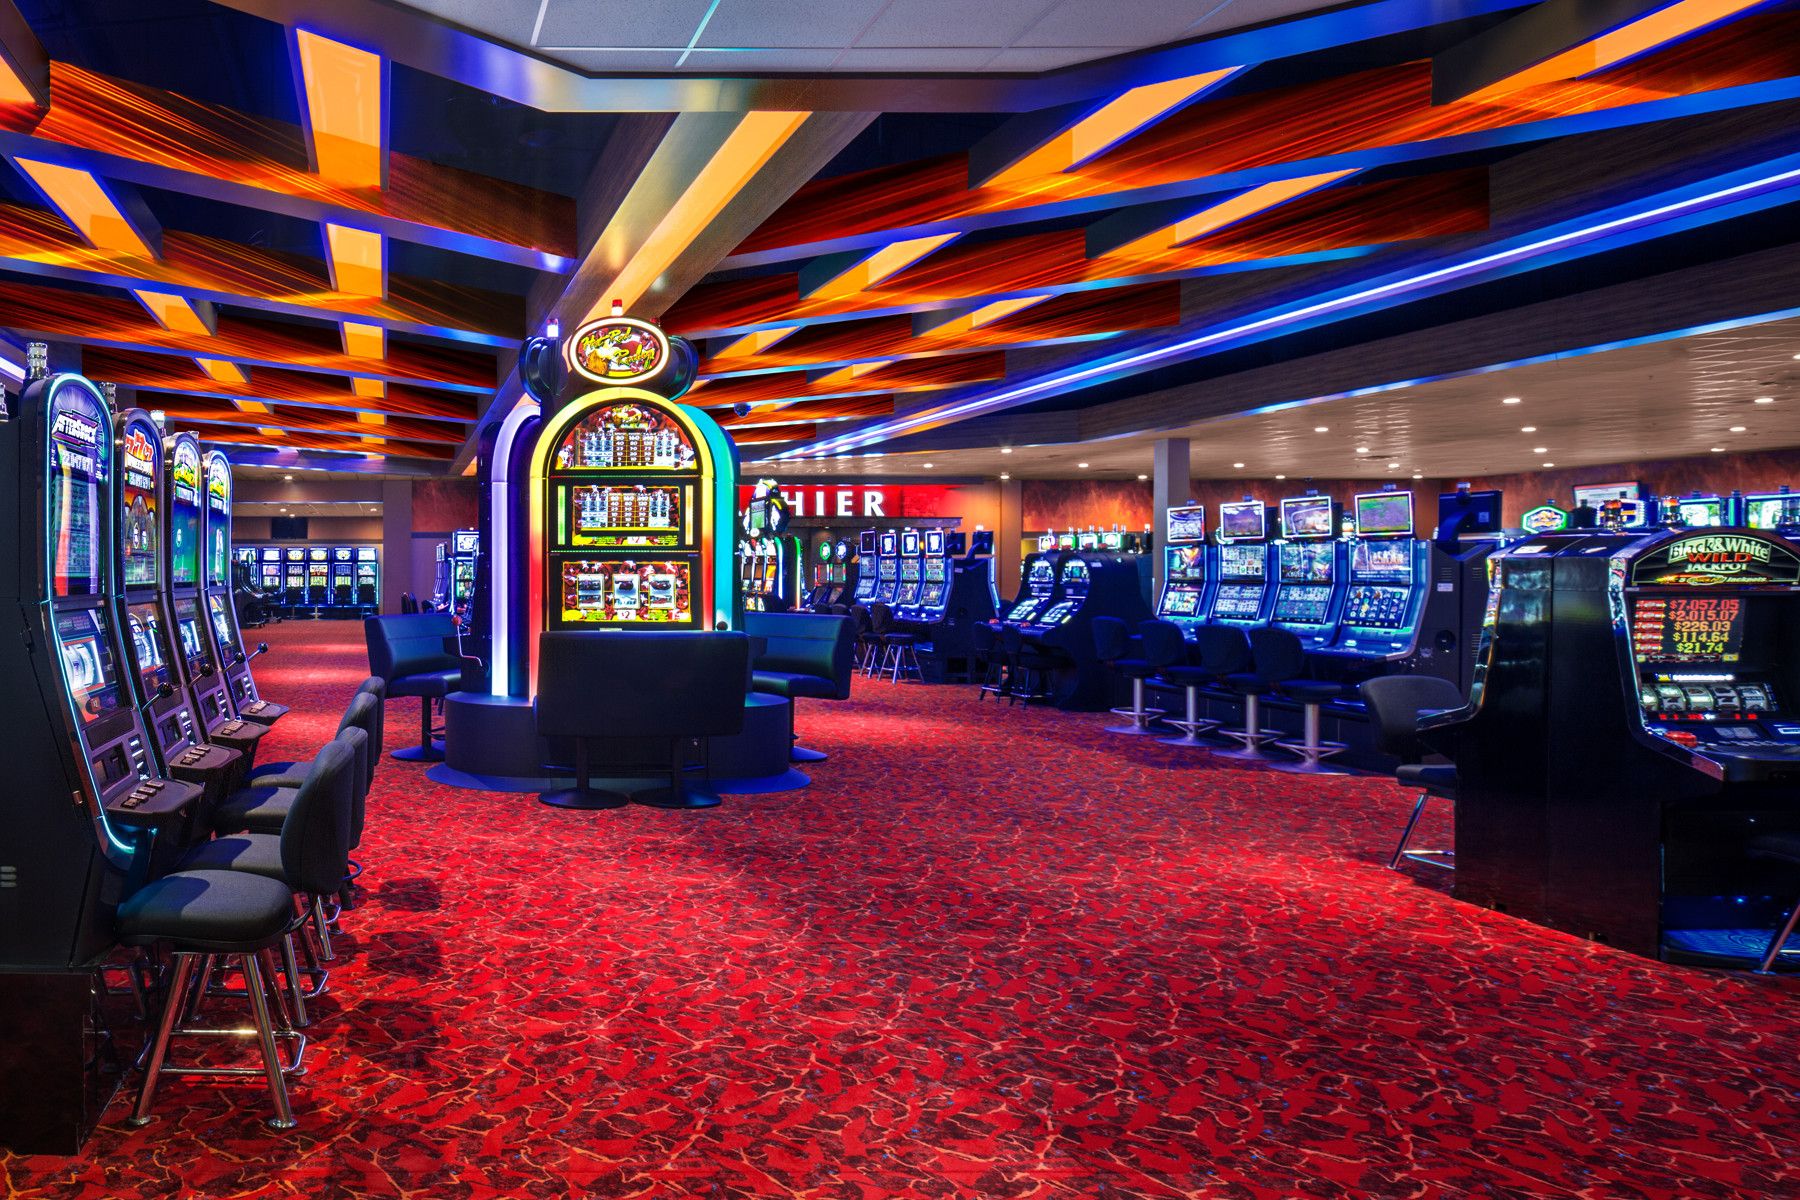 Retro new casino без верификации. Казино Лас Вегас игровые автоматы. Club Vegas игровые автоматы казино Лас Вегаса. Аппараты казино Лас Вегас. Лас Вегас казино слоты.